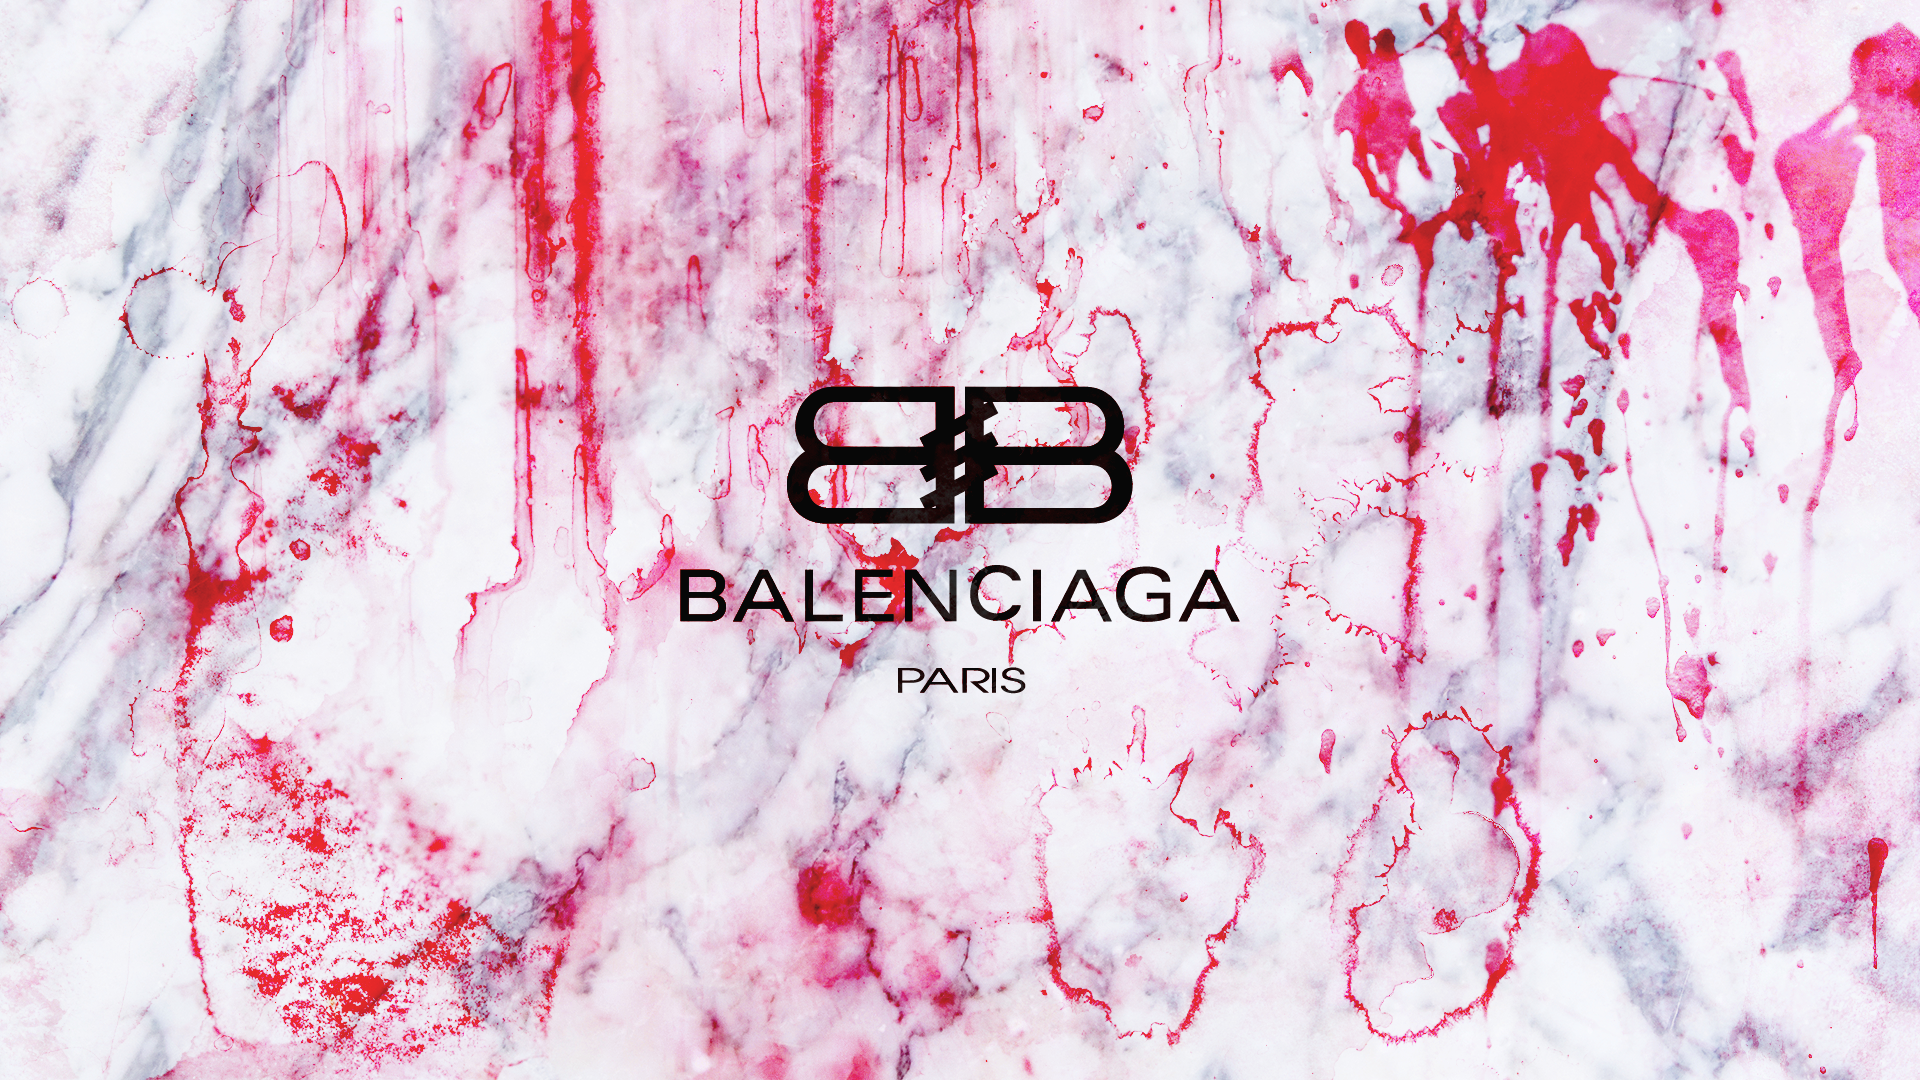 Balenciaga wallpaper 4k iphone